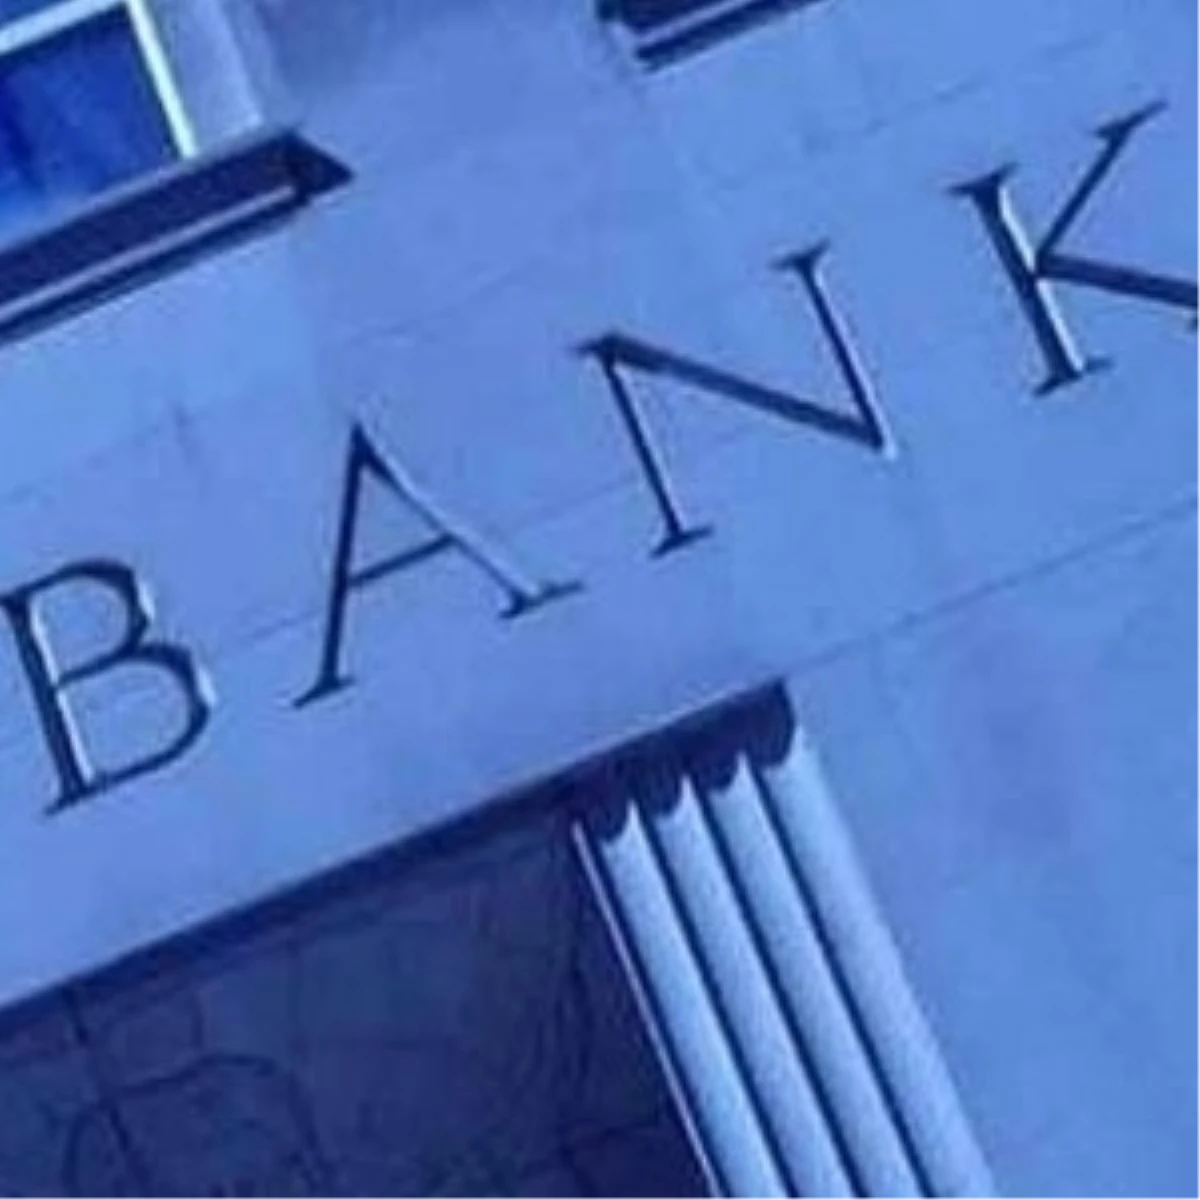 Yüksek Kaynak Maliyeti ve Vade Uyumsuzluğu Bankacılık Sektörü Karını Eritti